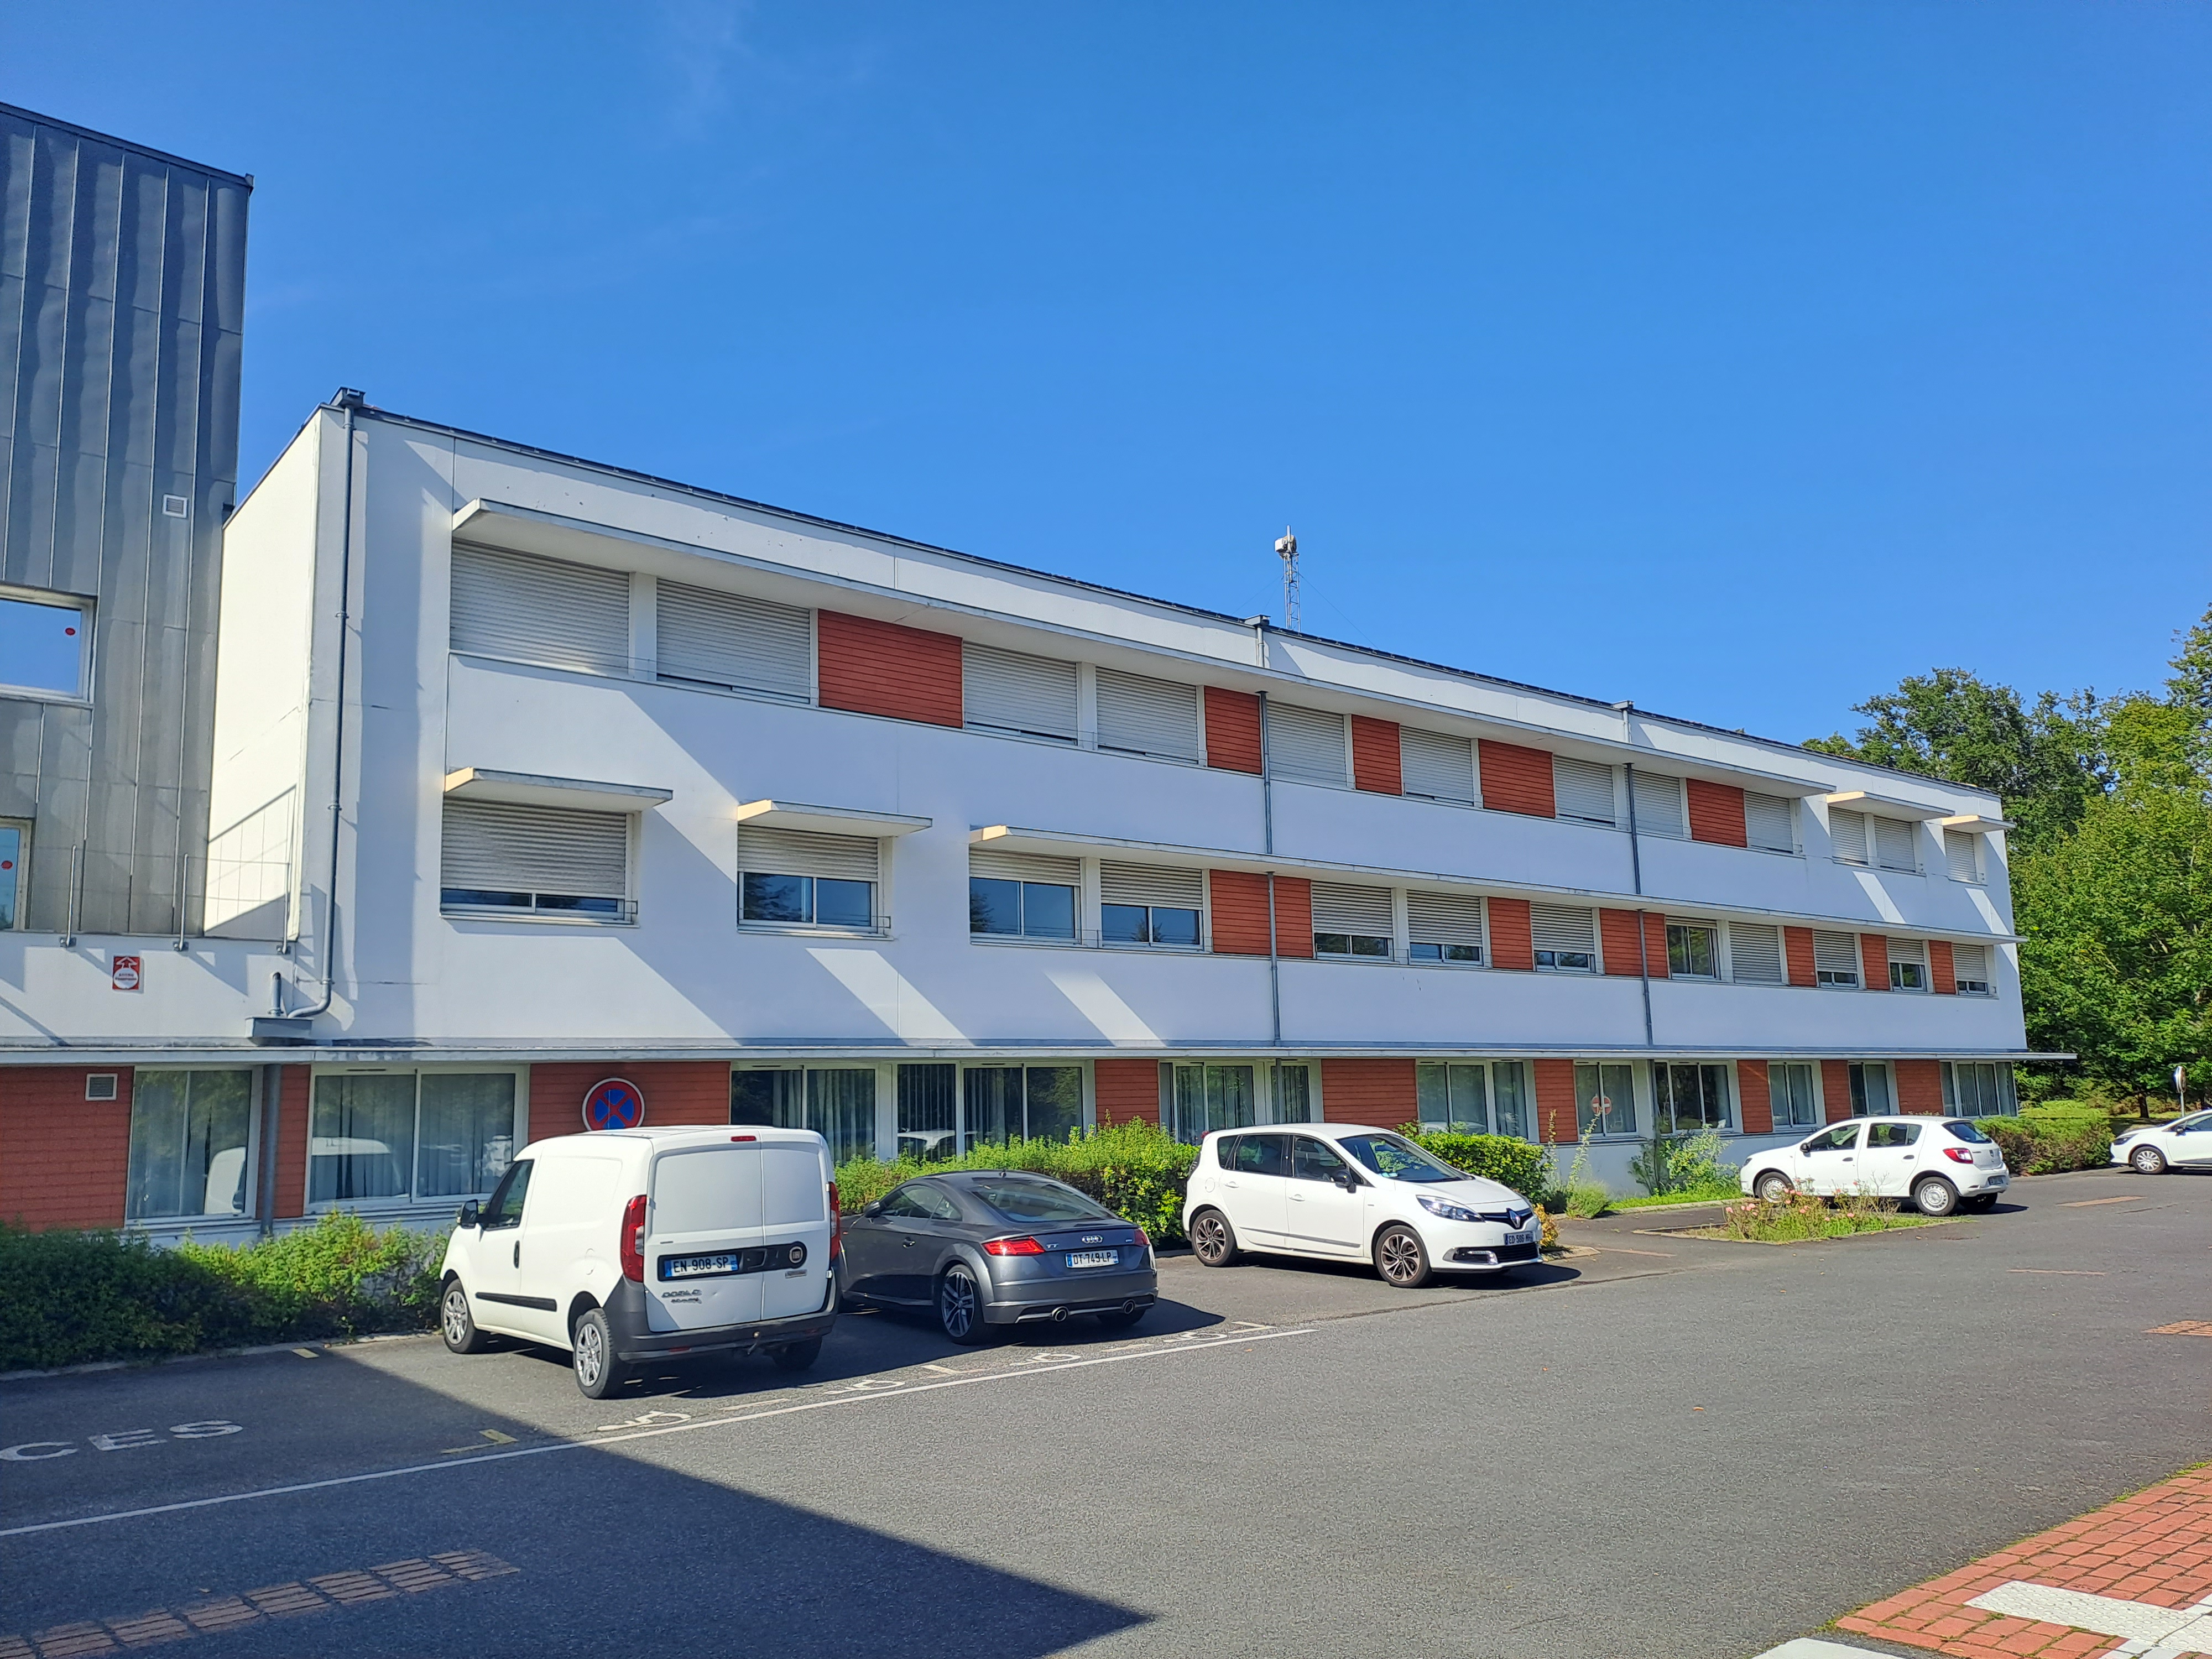 Photo #8 de de l'hôpital Sèvre-et-Loire